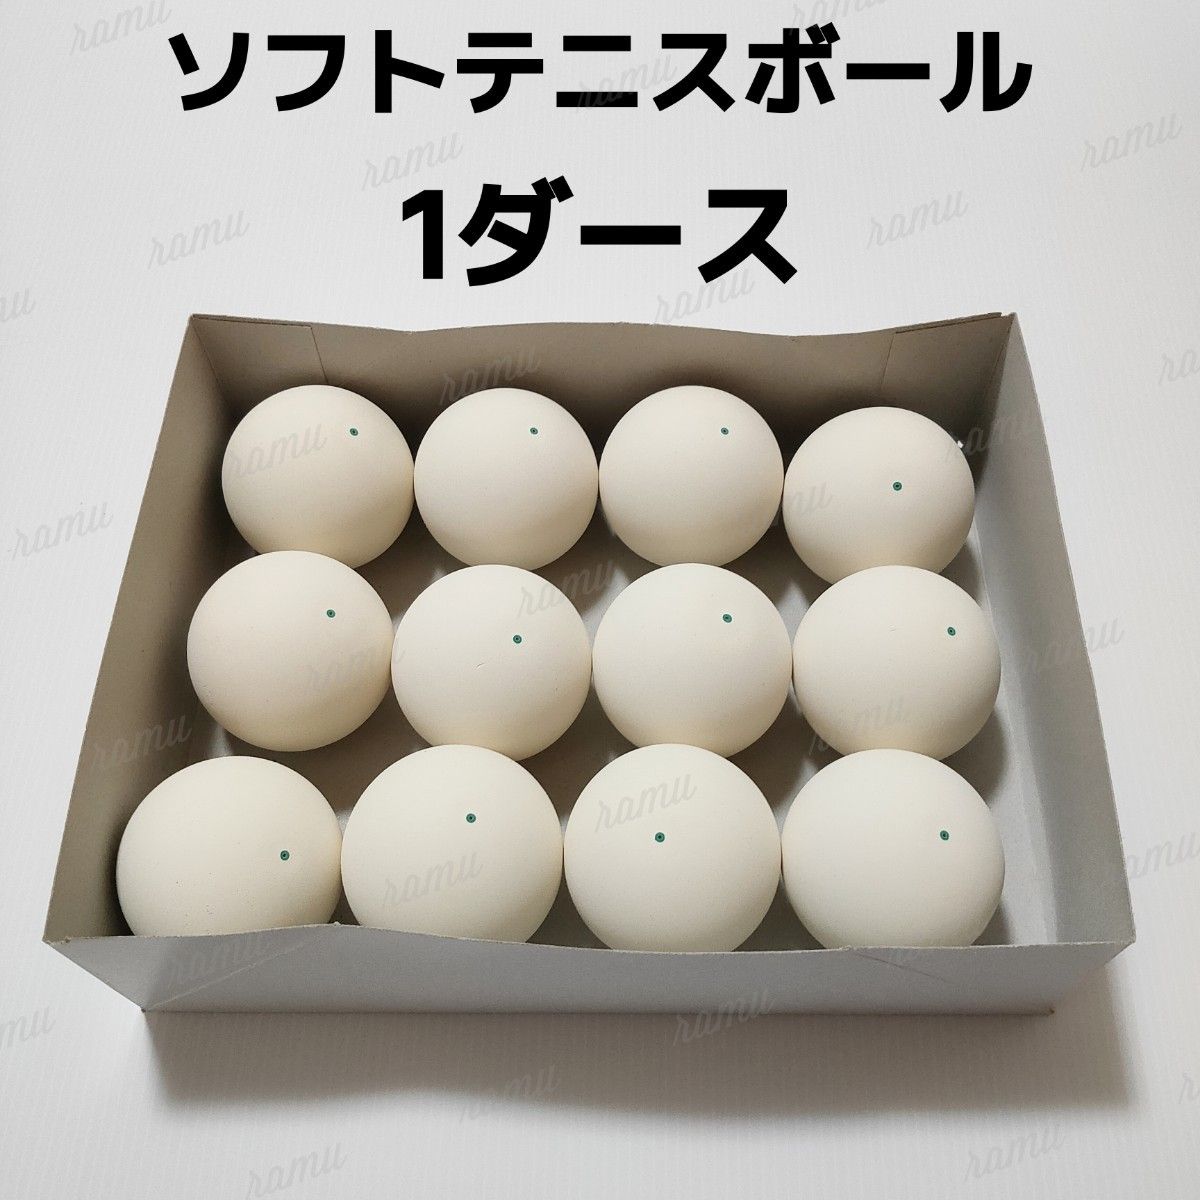 ケンコー ソフトテニスボール 120球(10ダース) 純正正規 www.m 